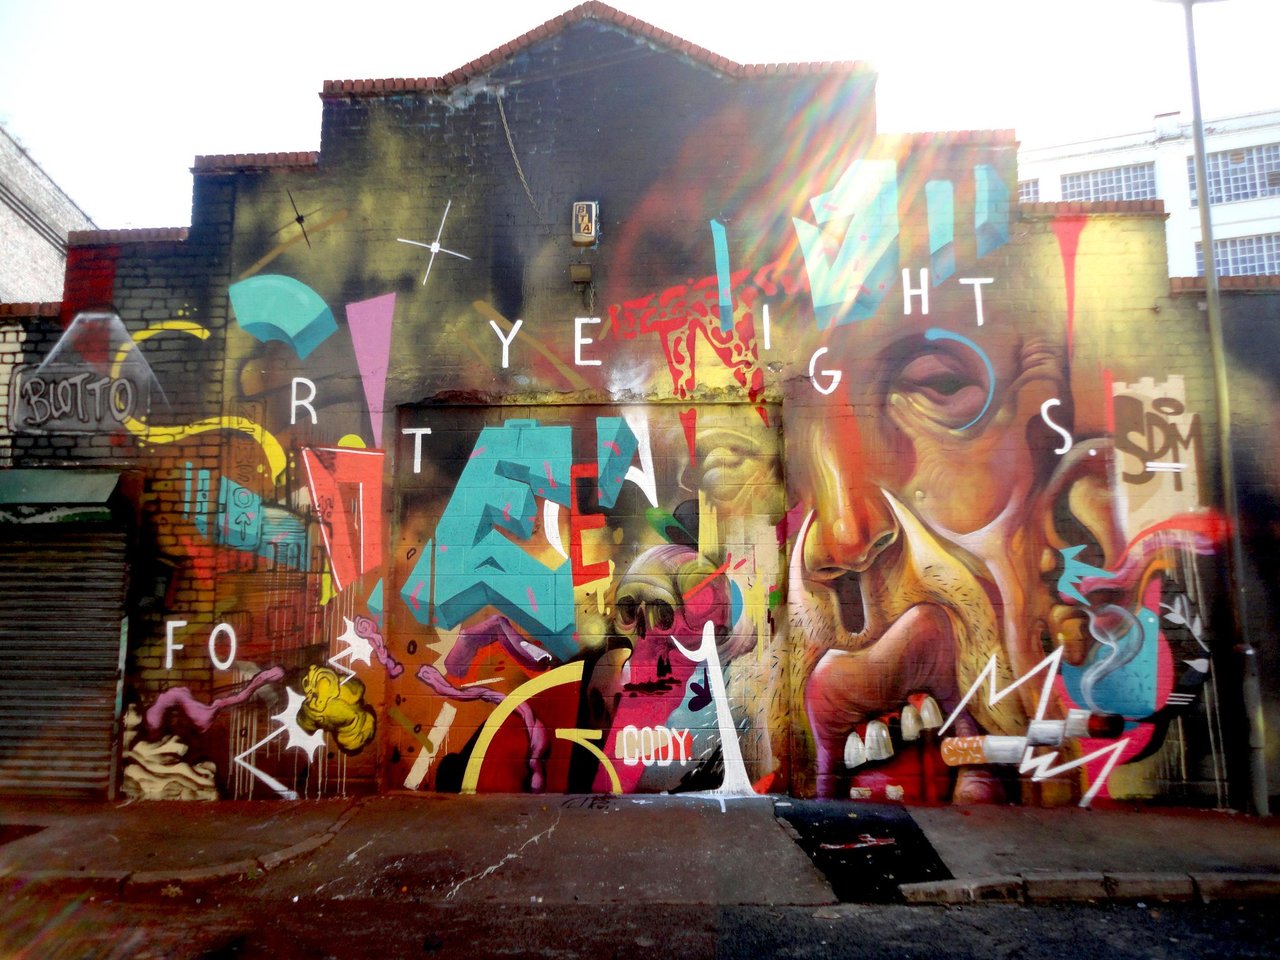 RT @djcolatron: @GENT48S & @dannewso have done it again. Amazing wall
#art #mural #graffiti #streetart #Digbeth http://t.co/LRi5WQmVHg